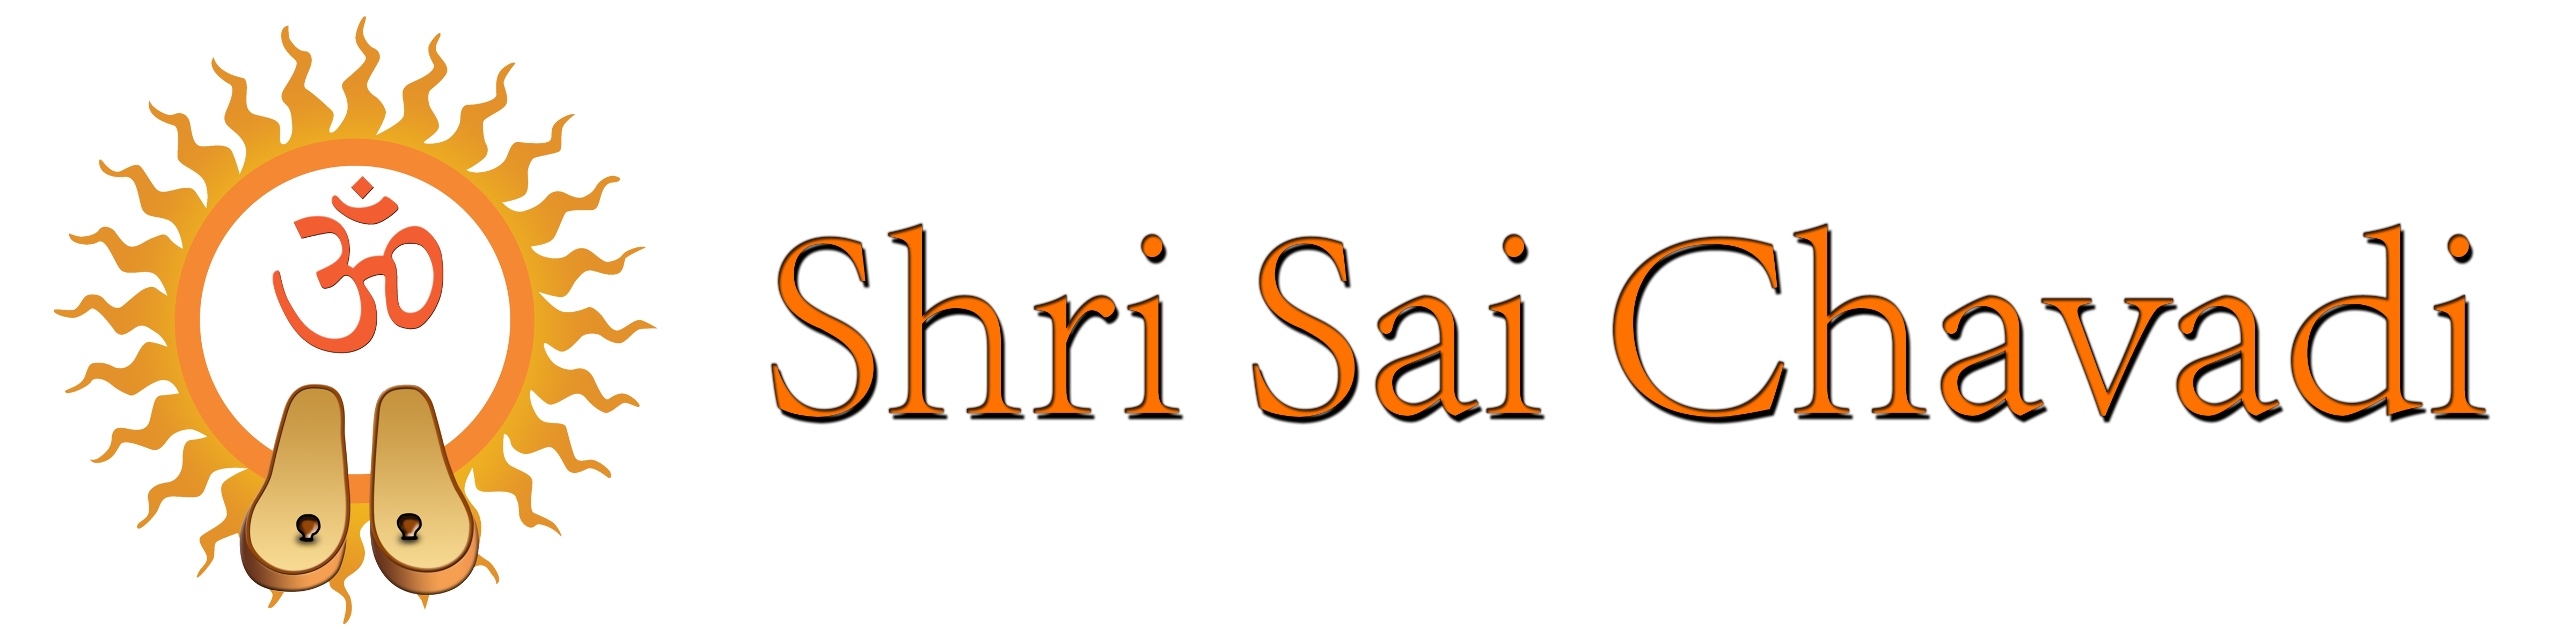 shri_sai_chavadi_logo.png